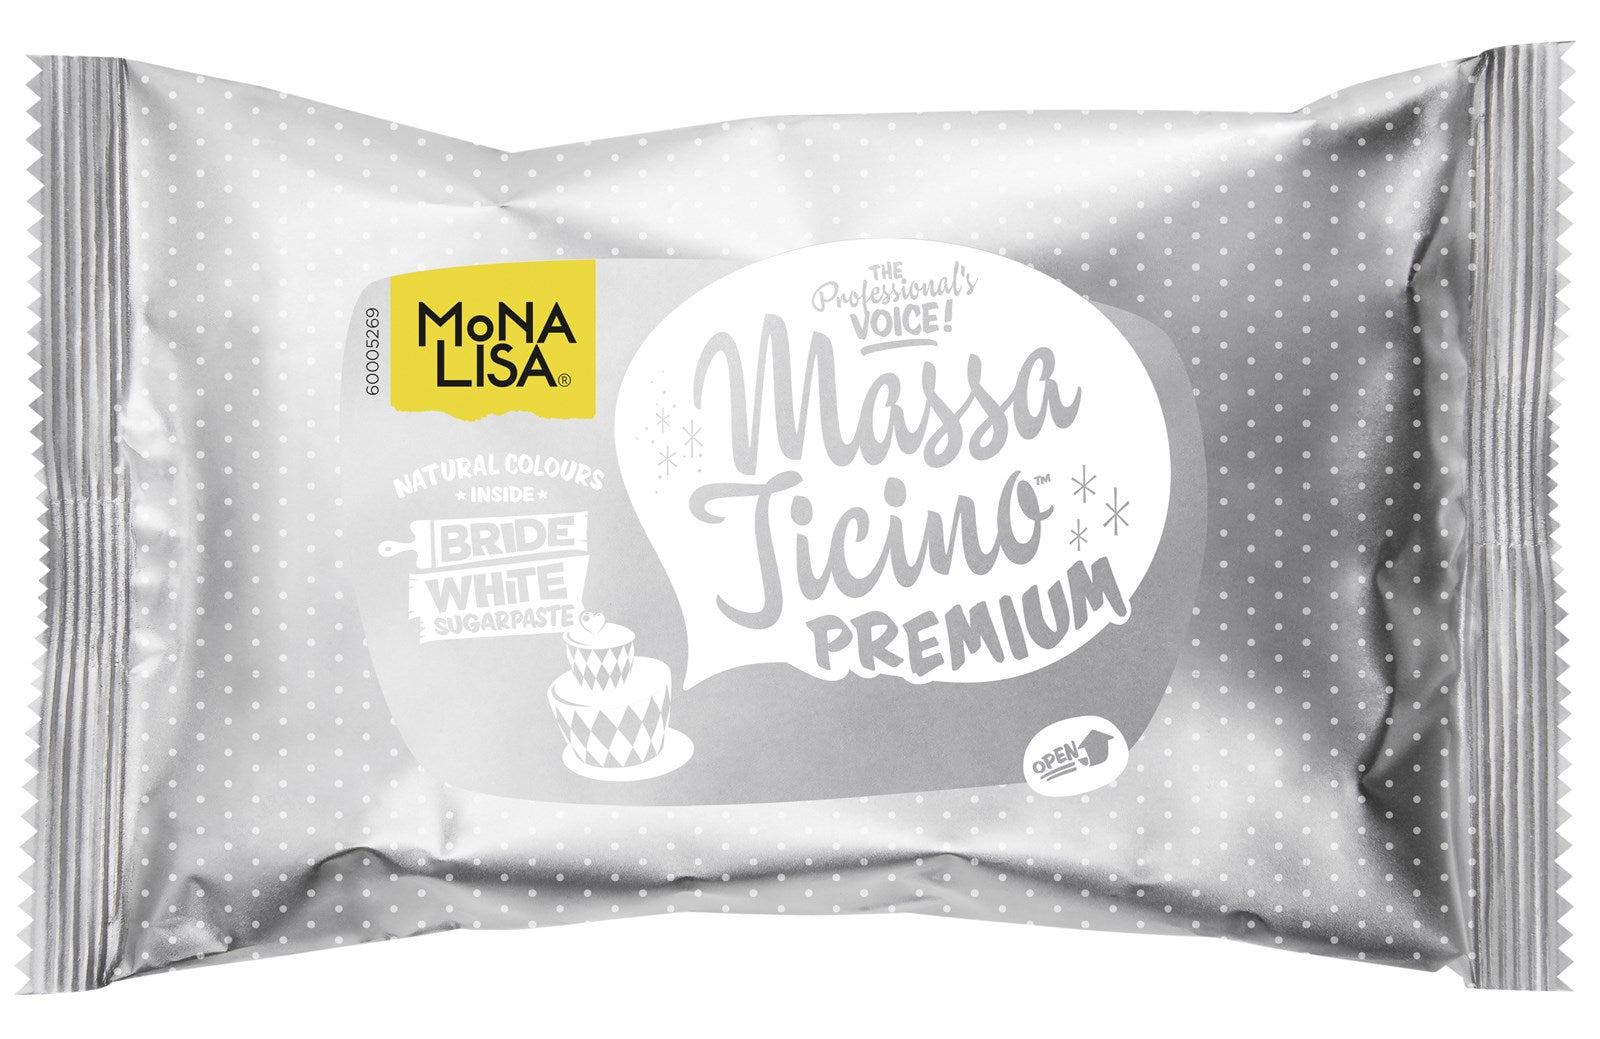 Massa Ticino Zucker Modelliermasse, weiss, 1 kg in Weiss präsentiert im Onlineshop von KAQTU Design AG. Lebensmittel ist von Massa Ticino